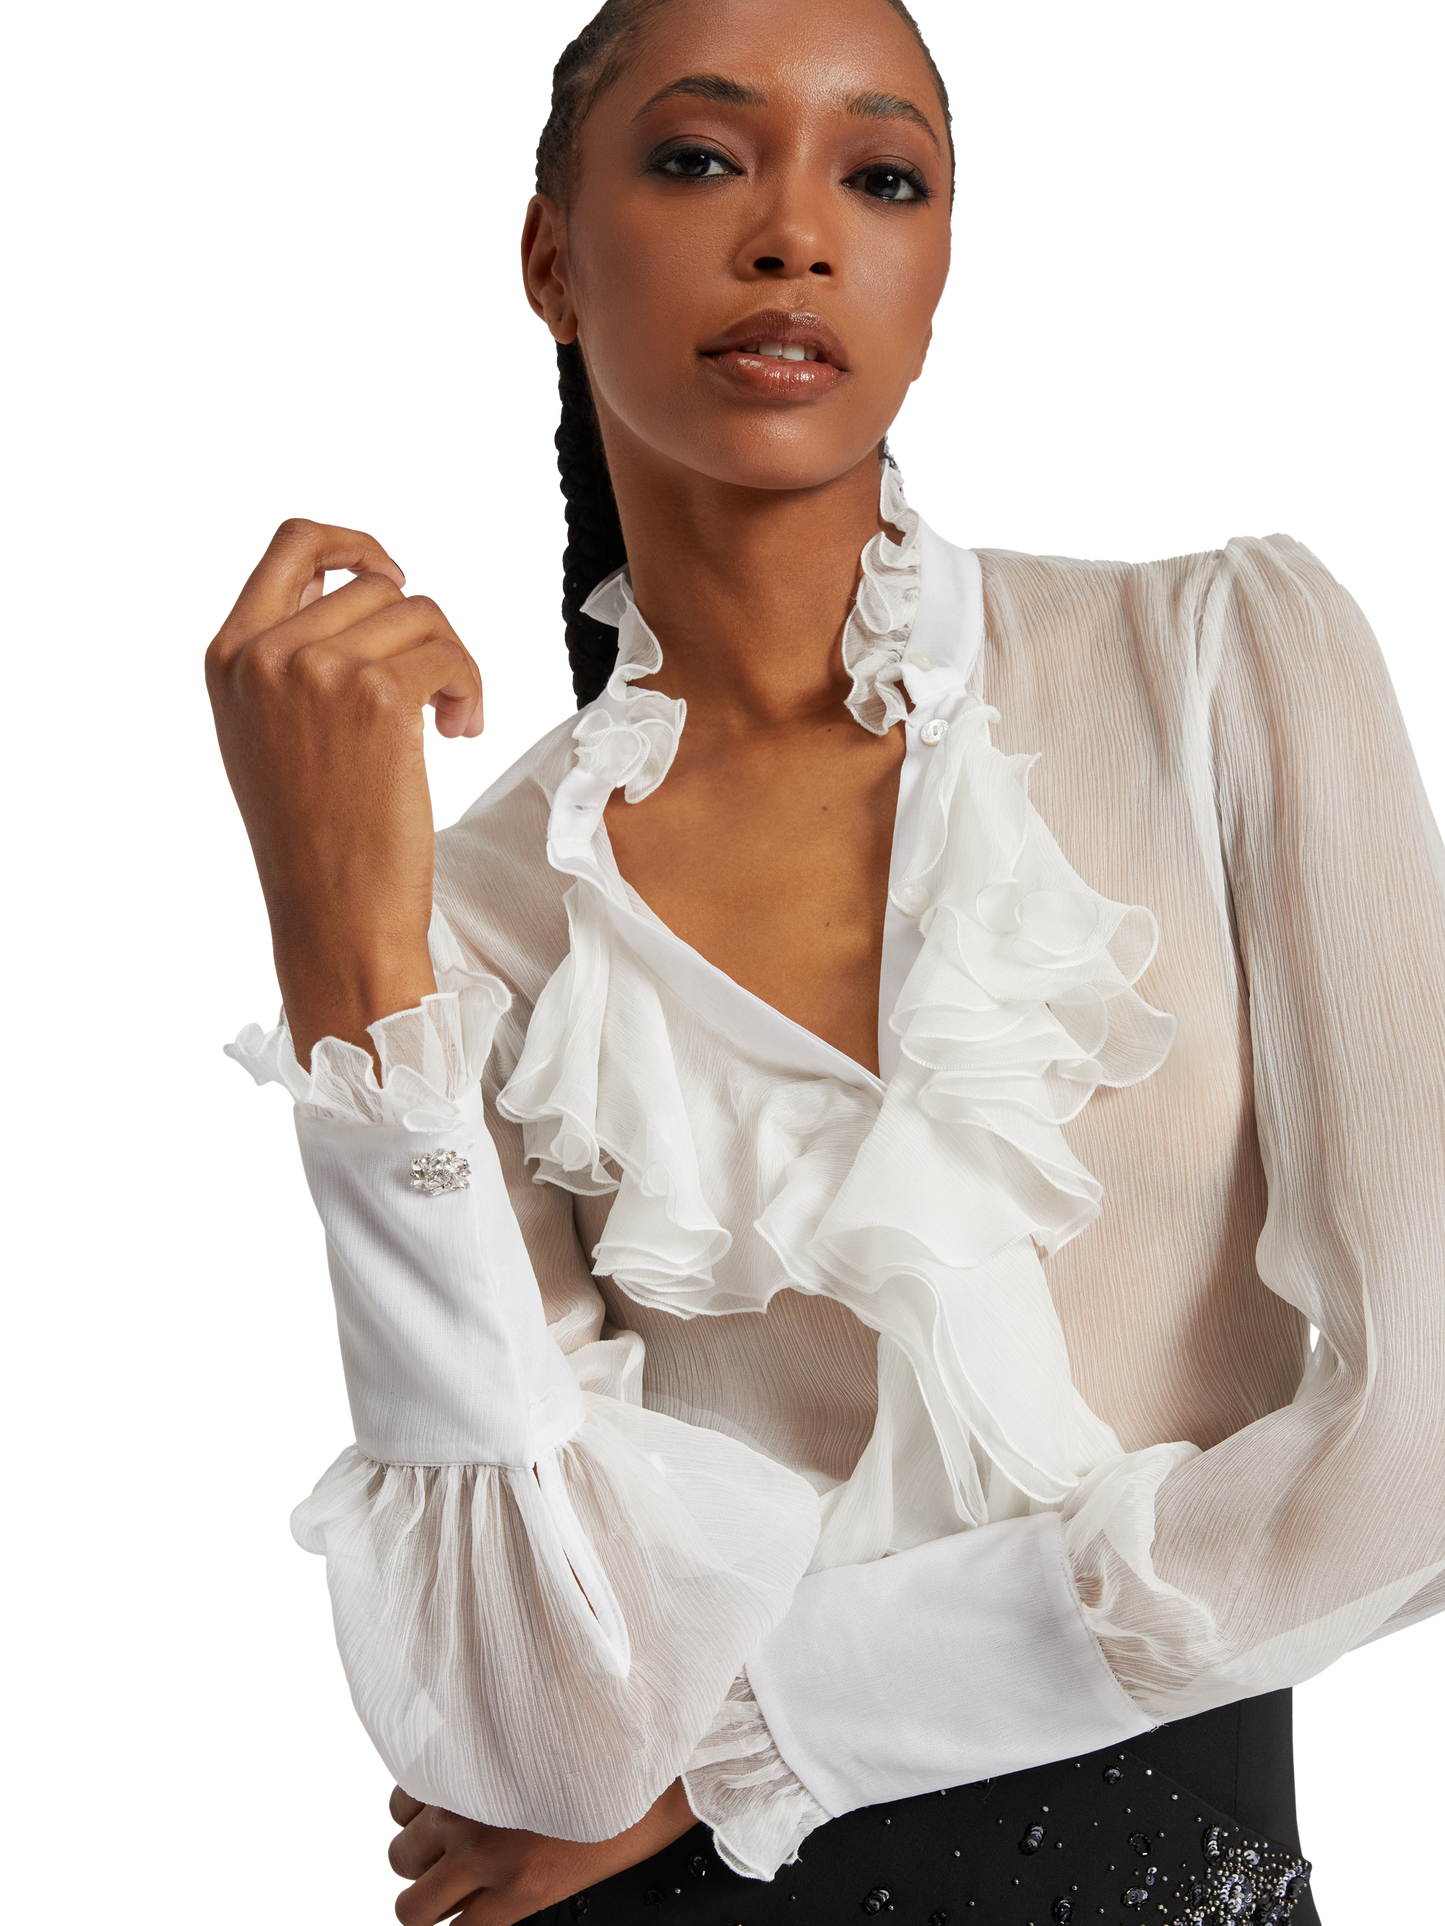 Silk ruffles shirt with jewel buttons